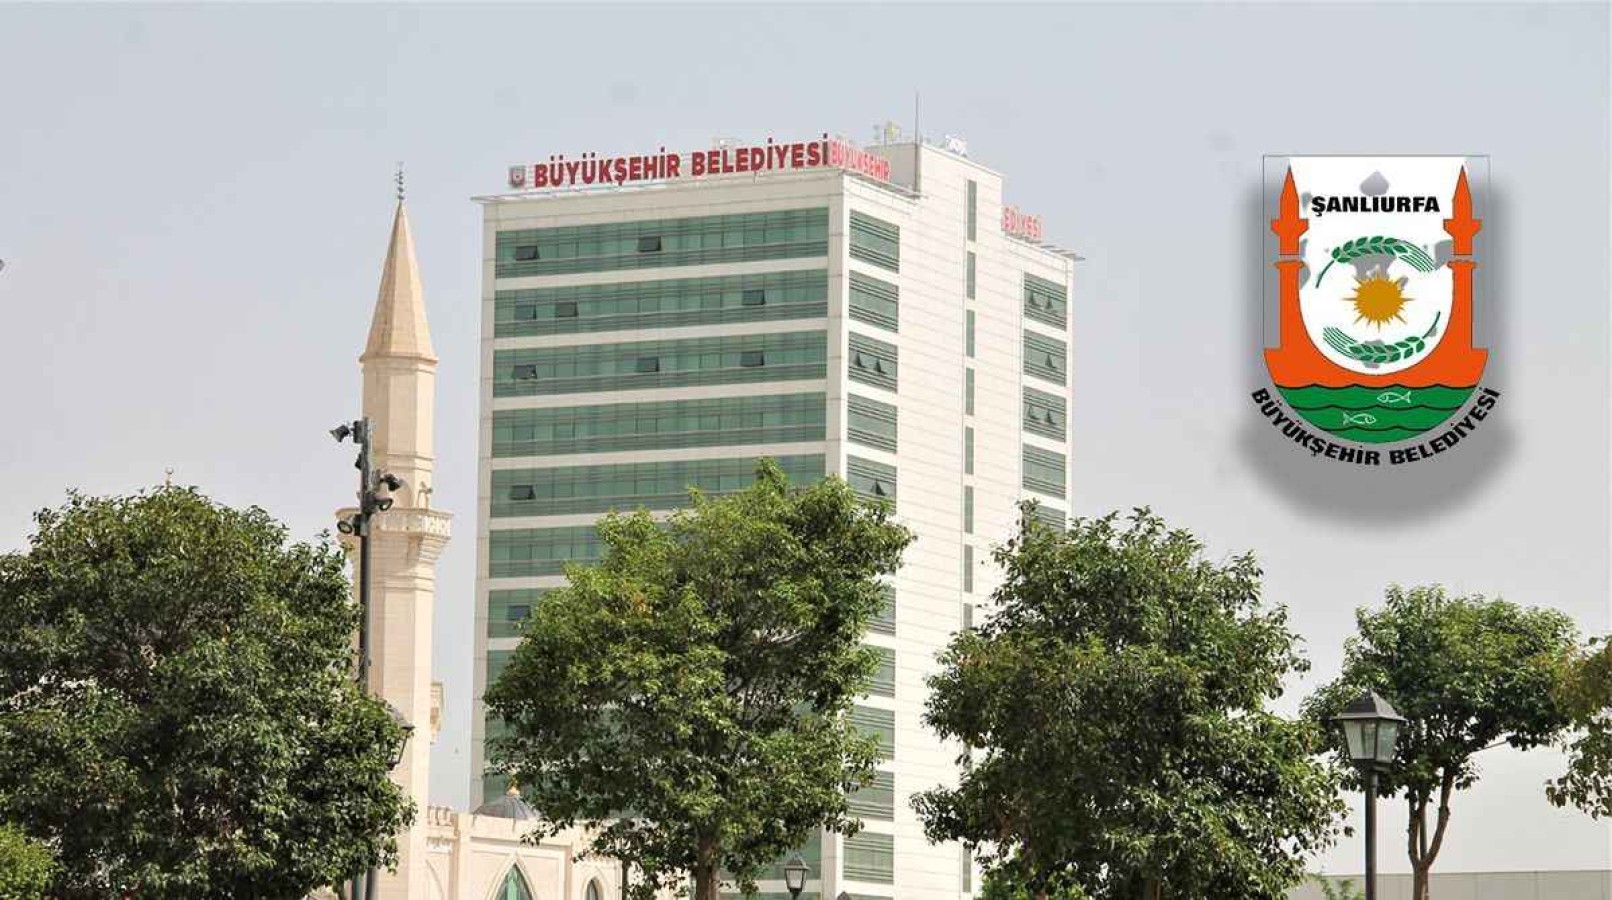 Şanlıurfa Büyükşehir Belediyesi'nde personel promosyonu ihaleleri iptal edildi